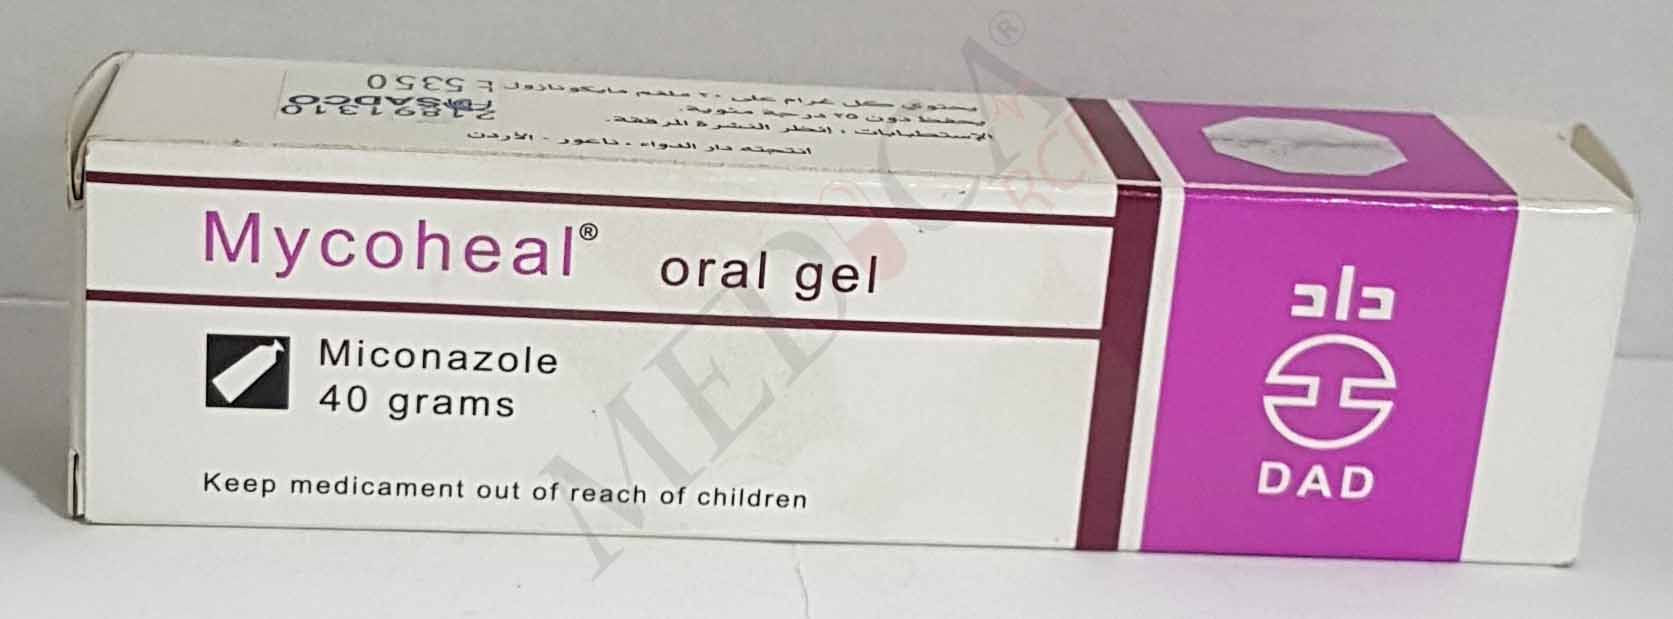 Mycoheal Oral Gel